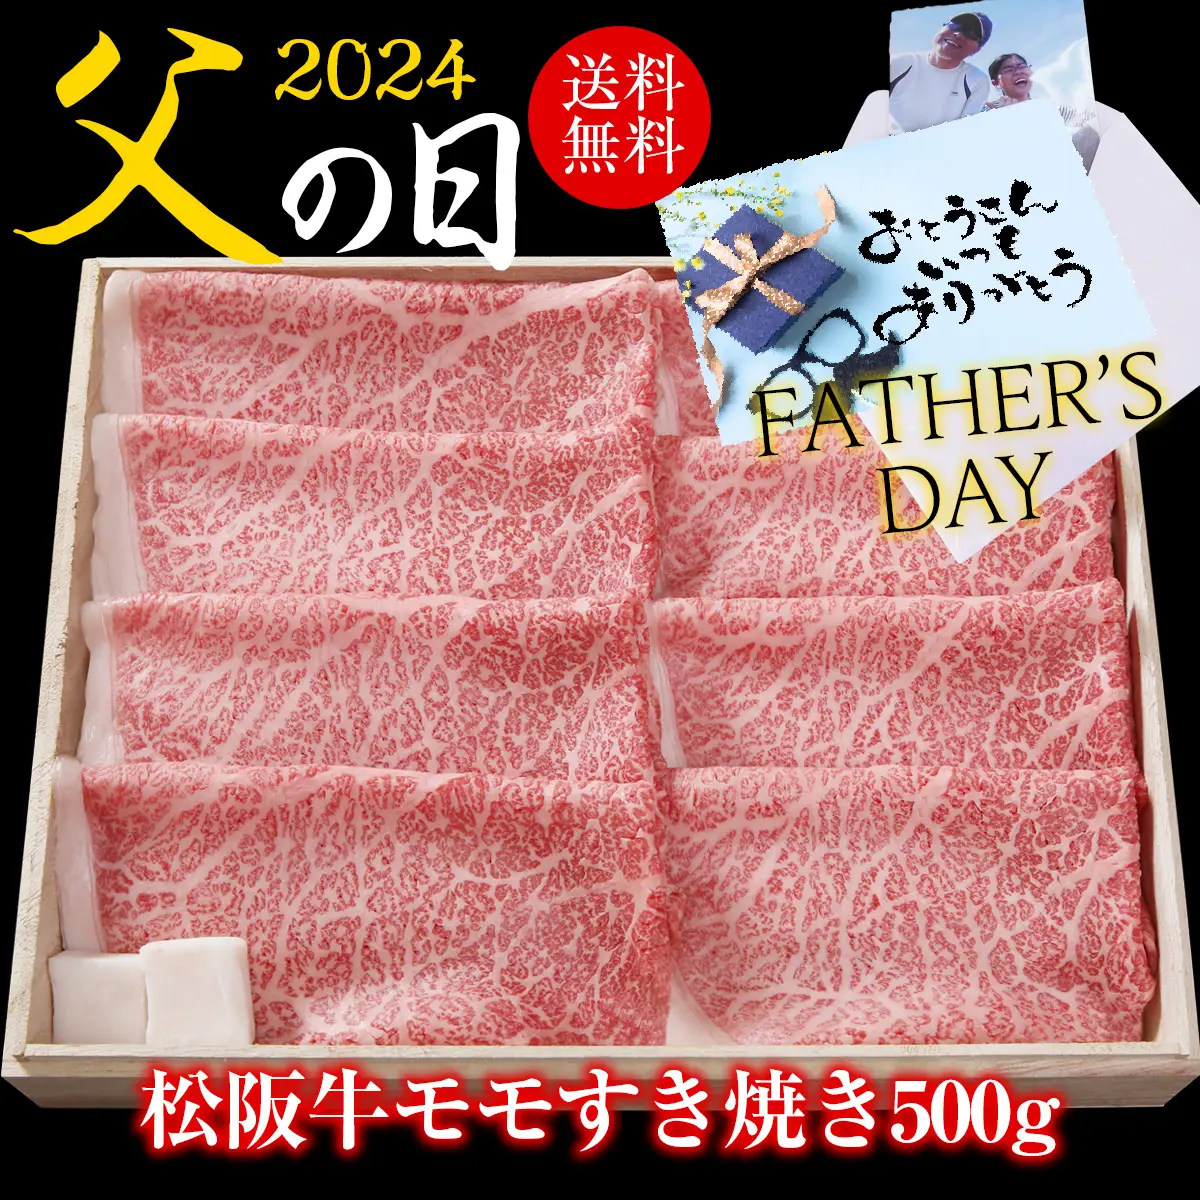 【父の日】松阪牛モモすき焼き用500g